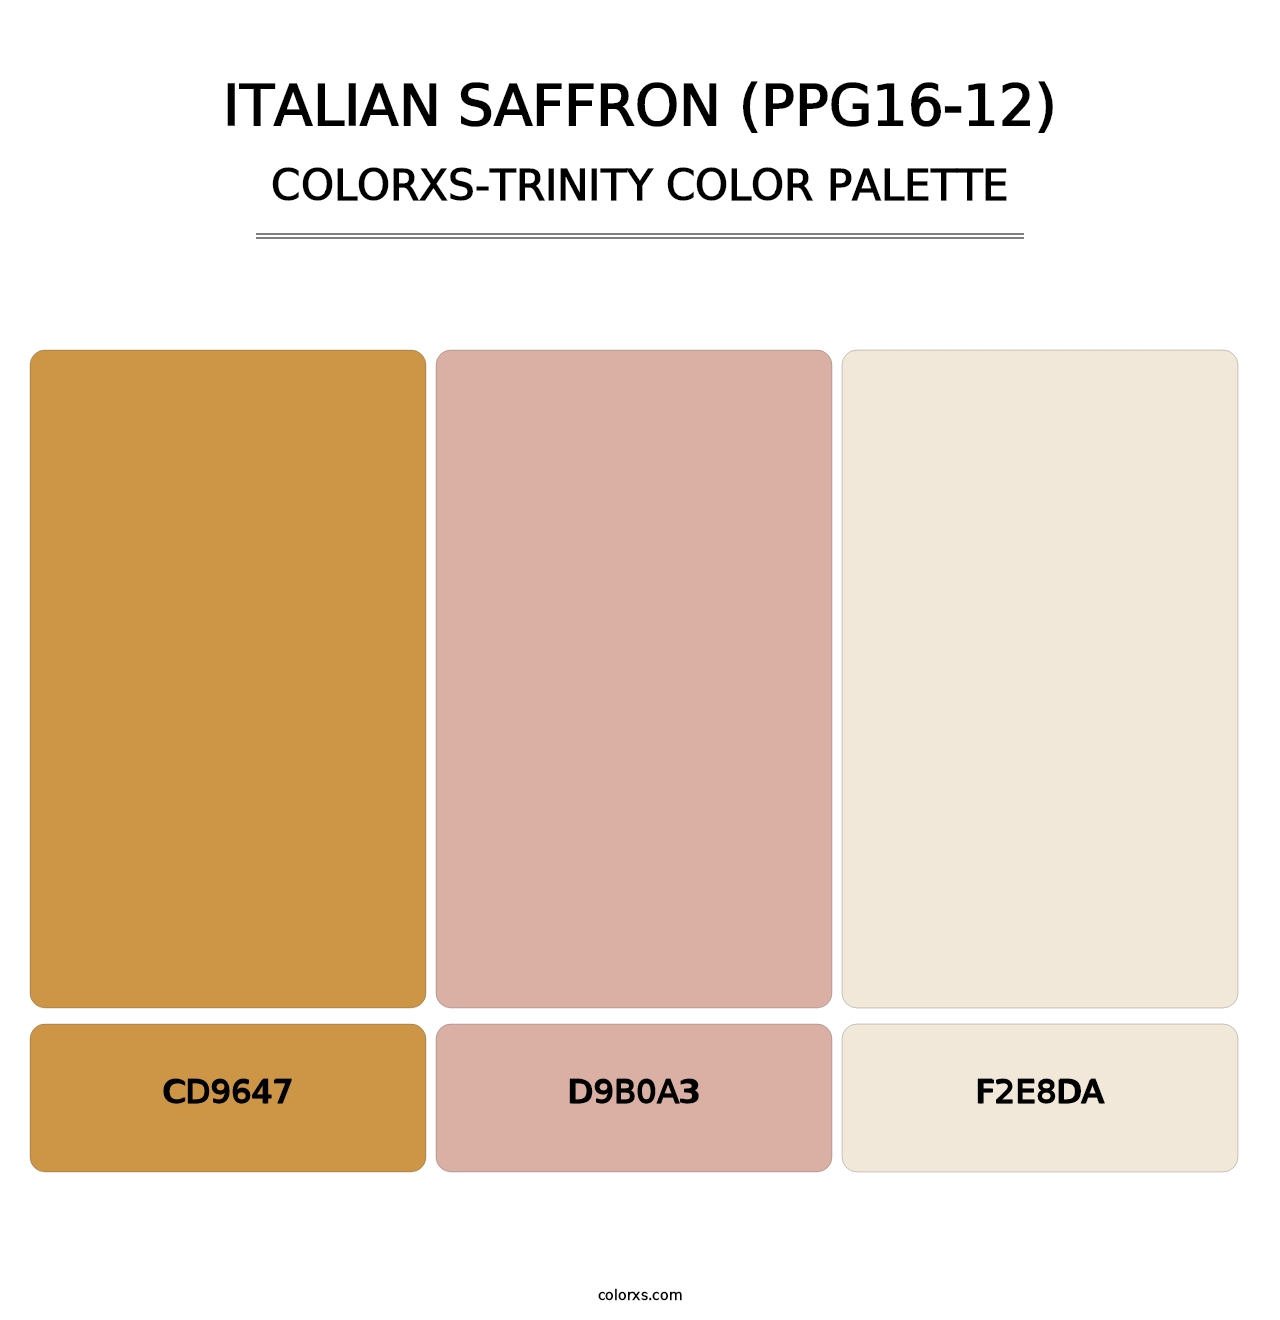 Italian Saffron (PPG16-12) - Colorxs Trinity Palette